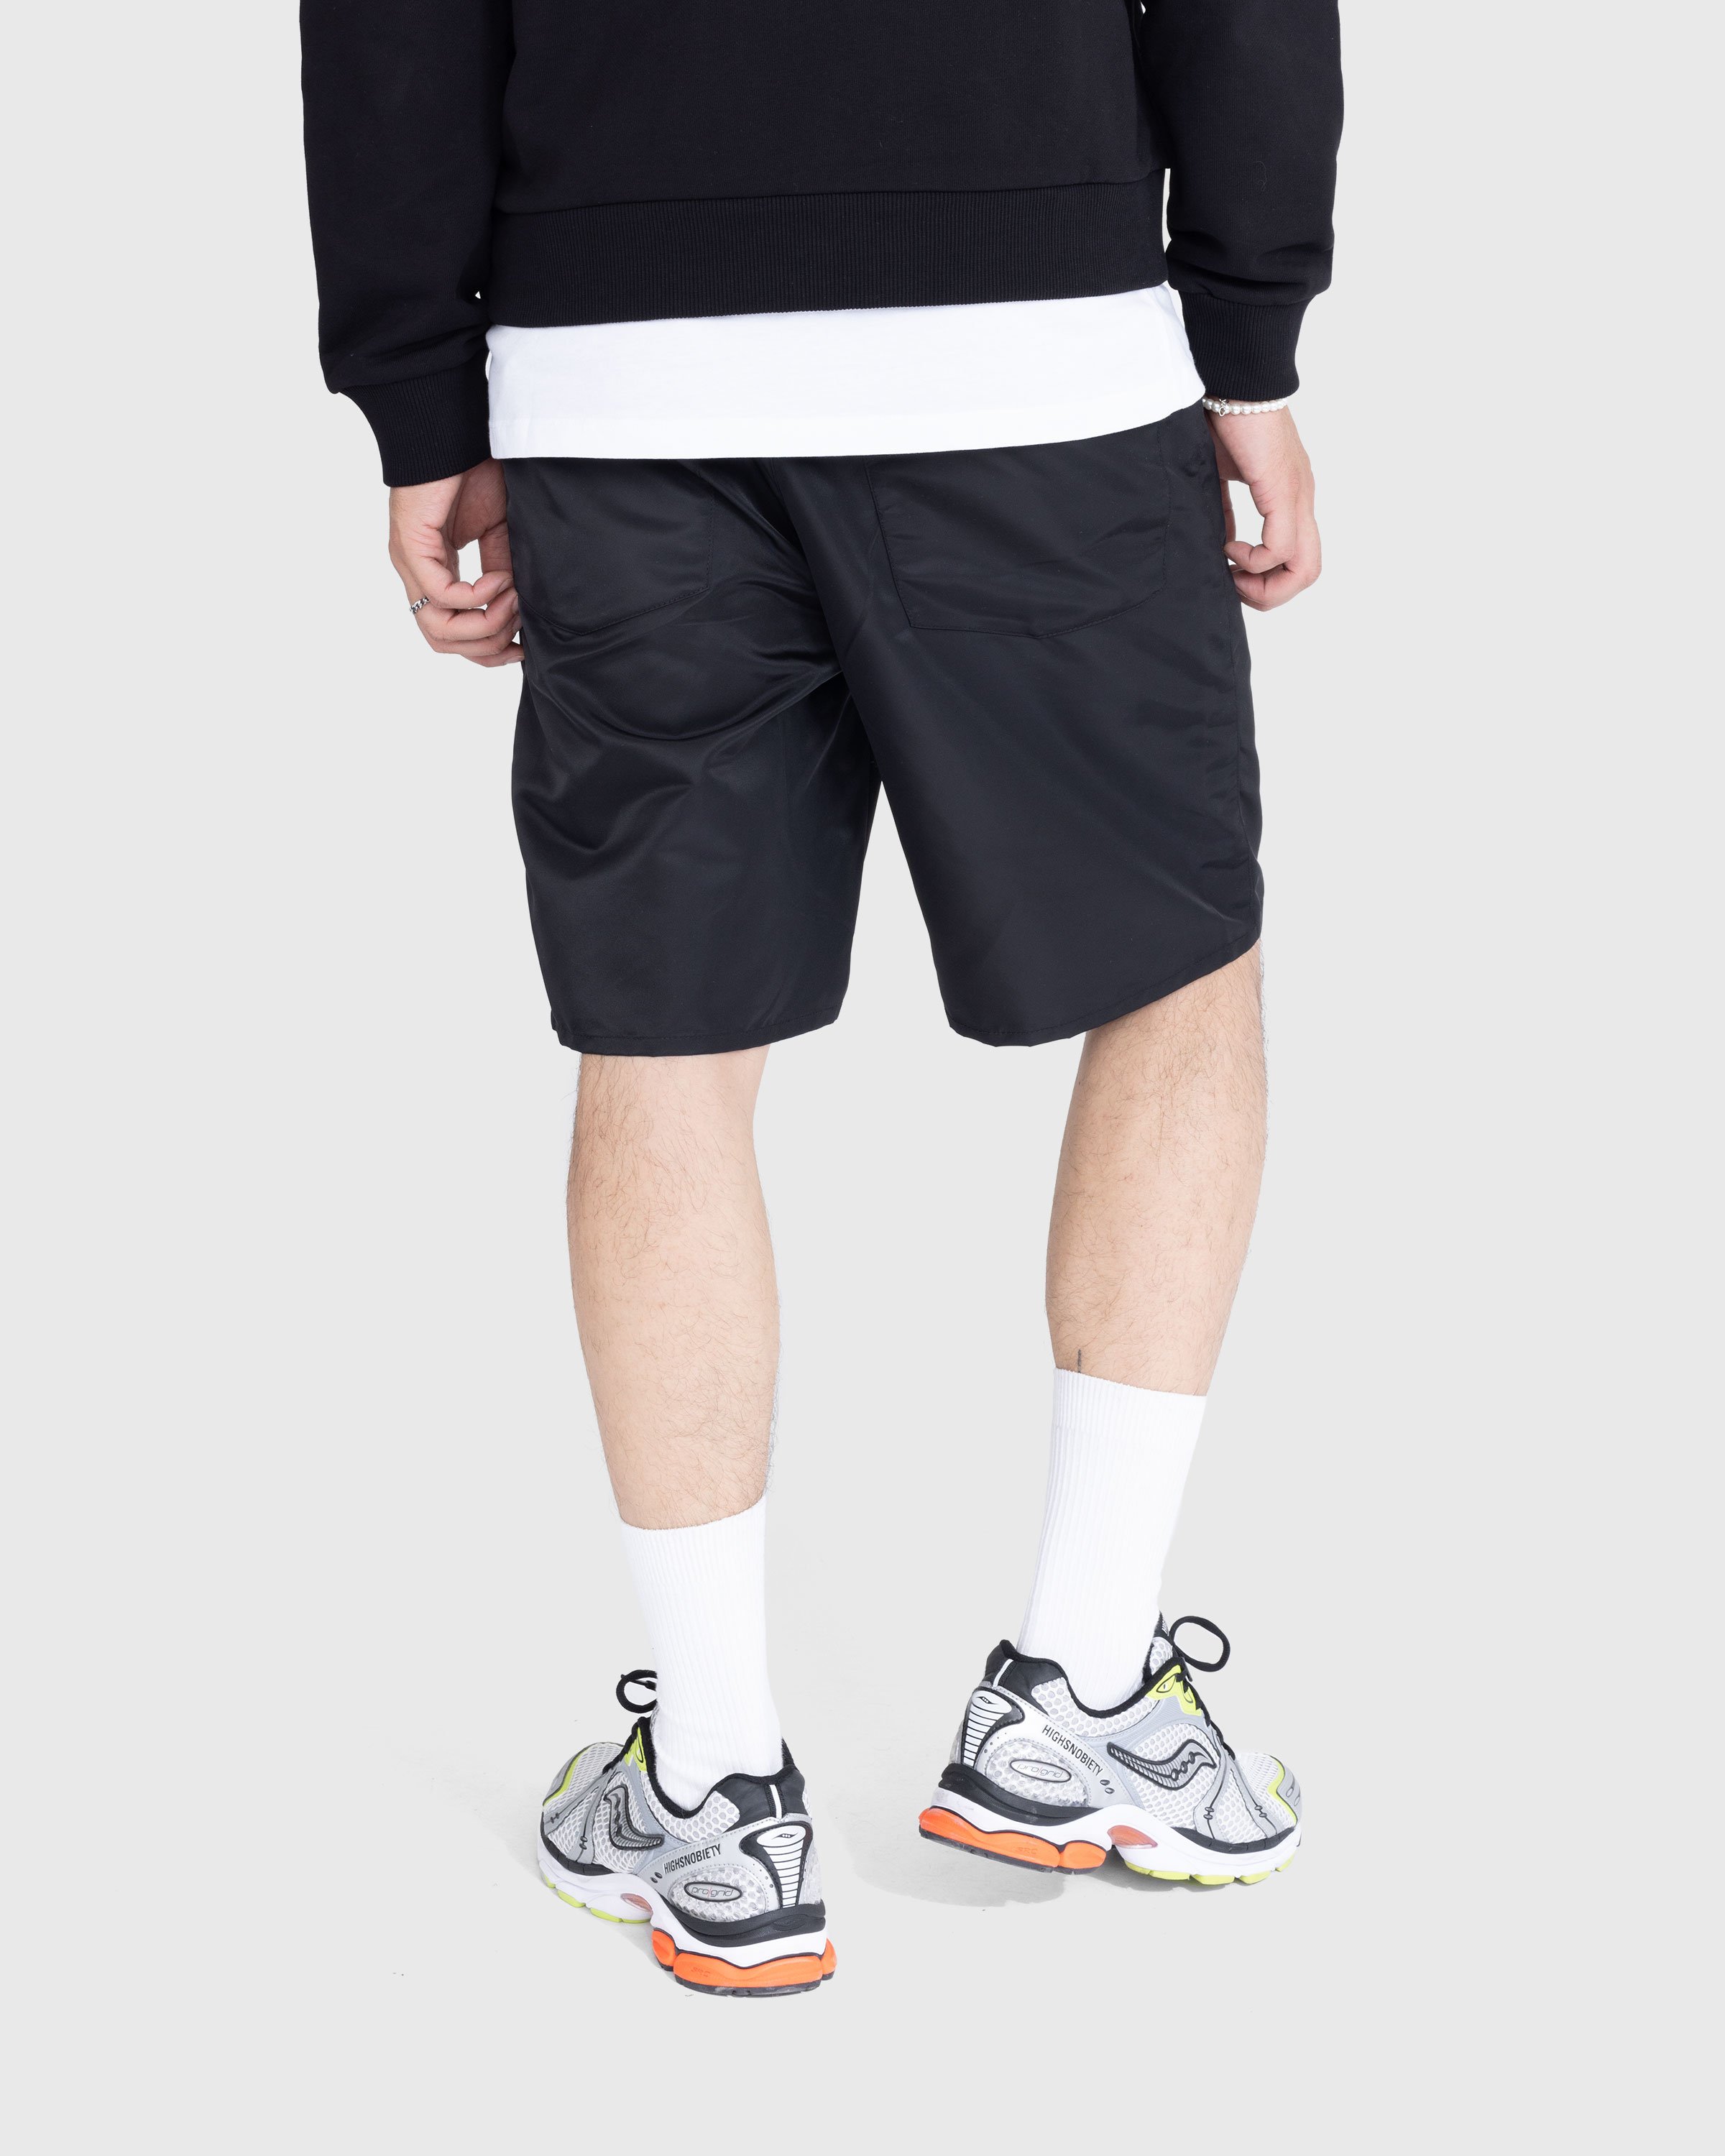 Trussardi - Nylon Shorts Black - Clothing - Black - Image 3